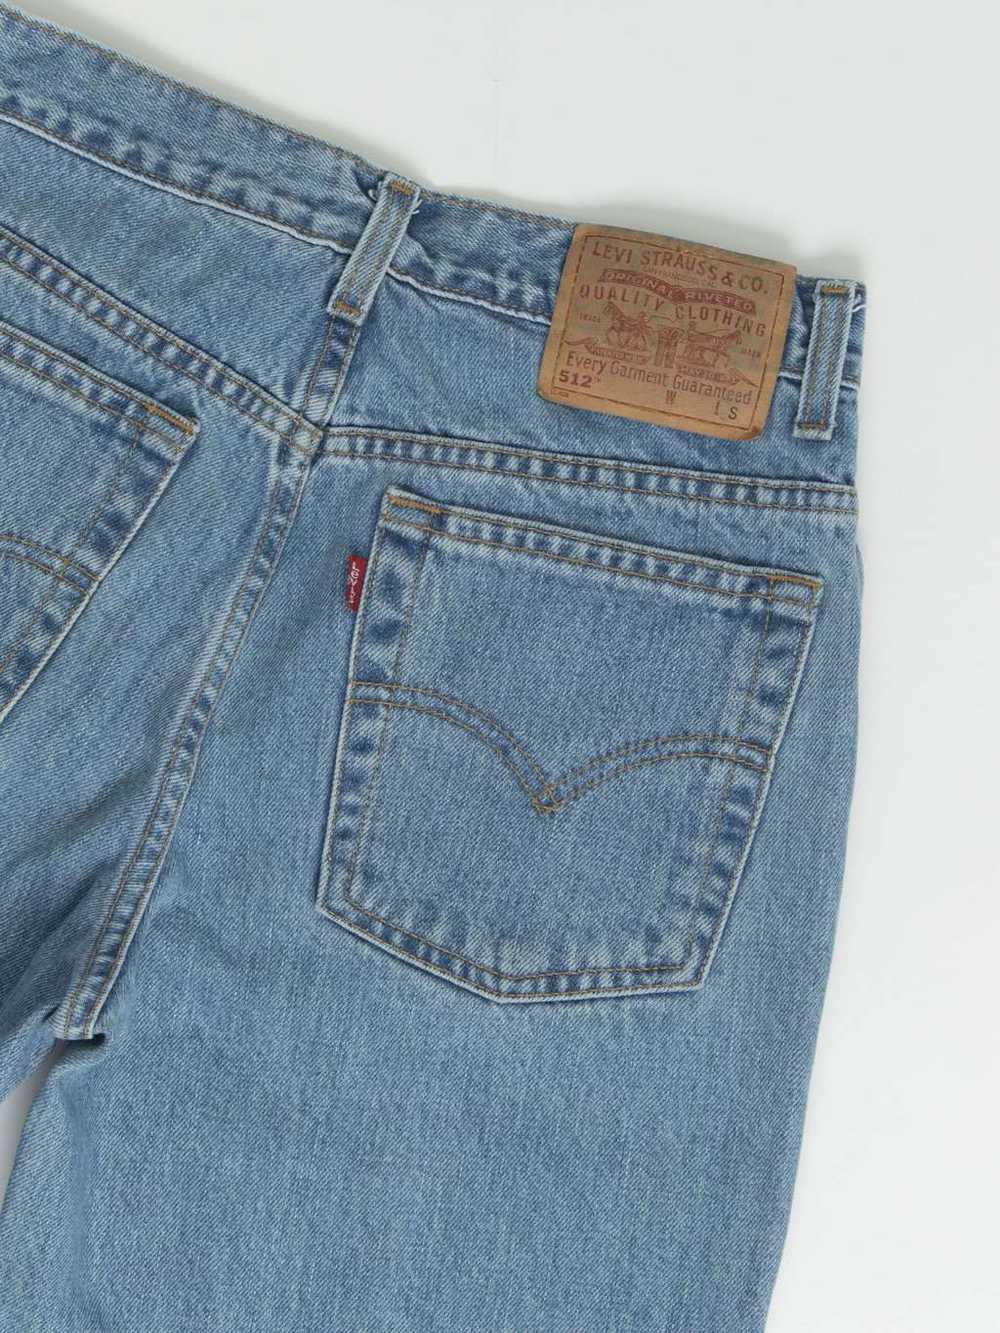 Vintage Levis 512 jeans 28 x 26 blue stonewash 90… - image 4